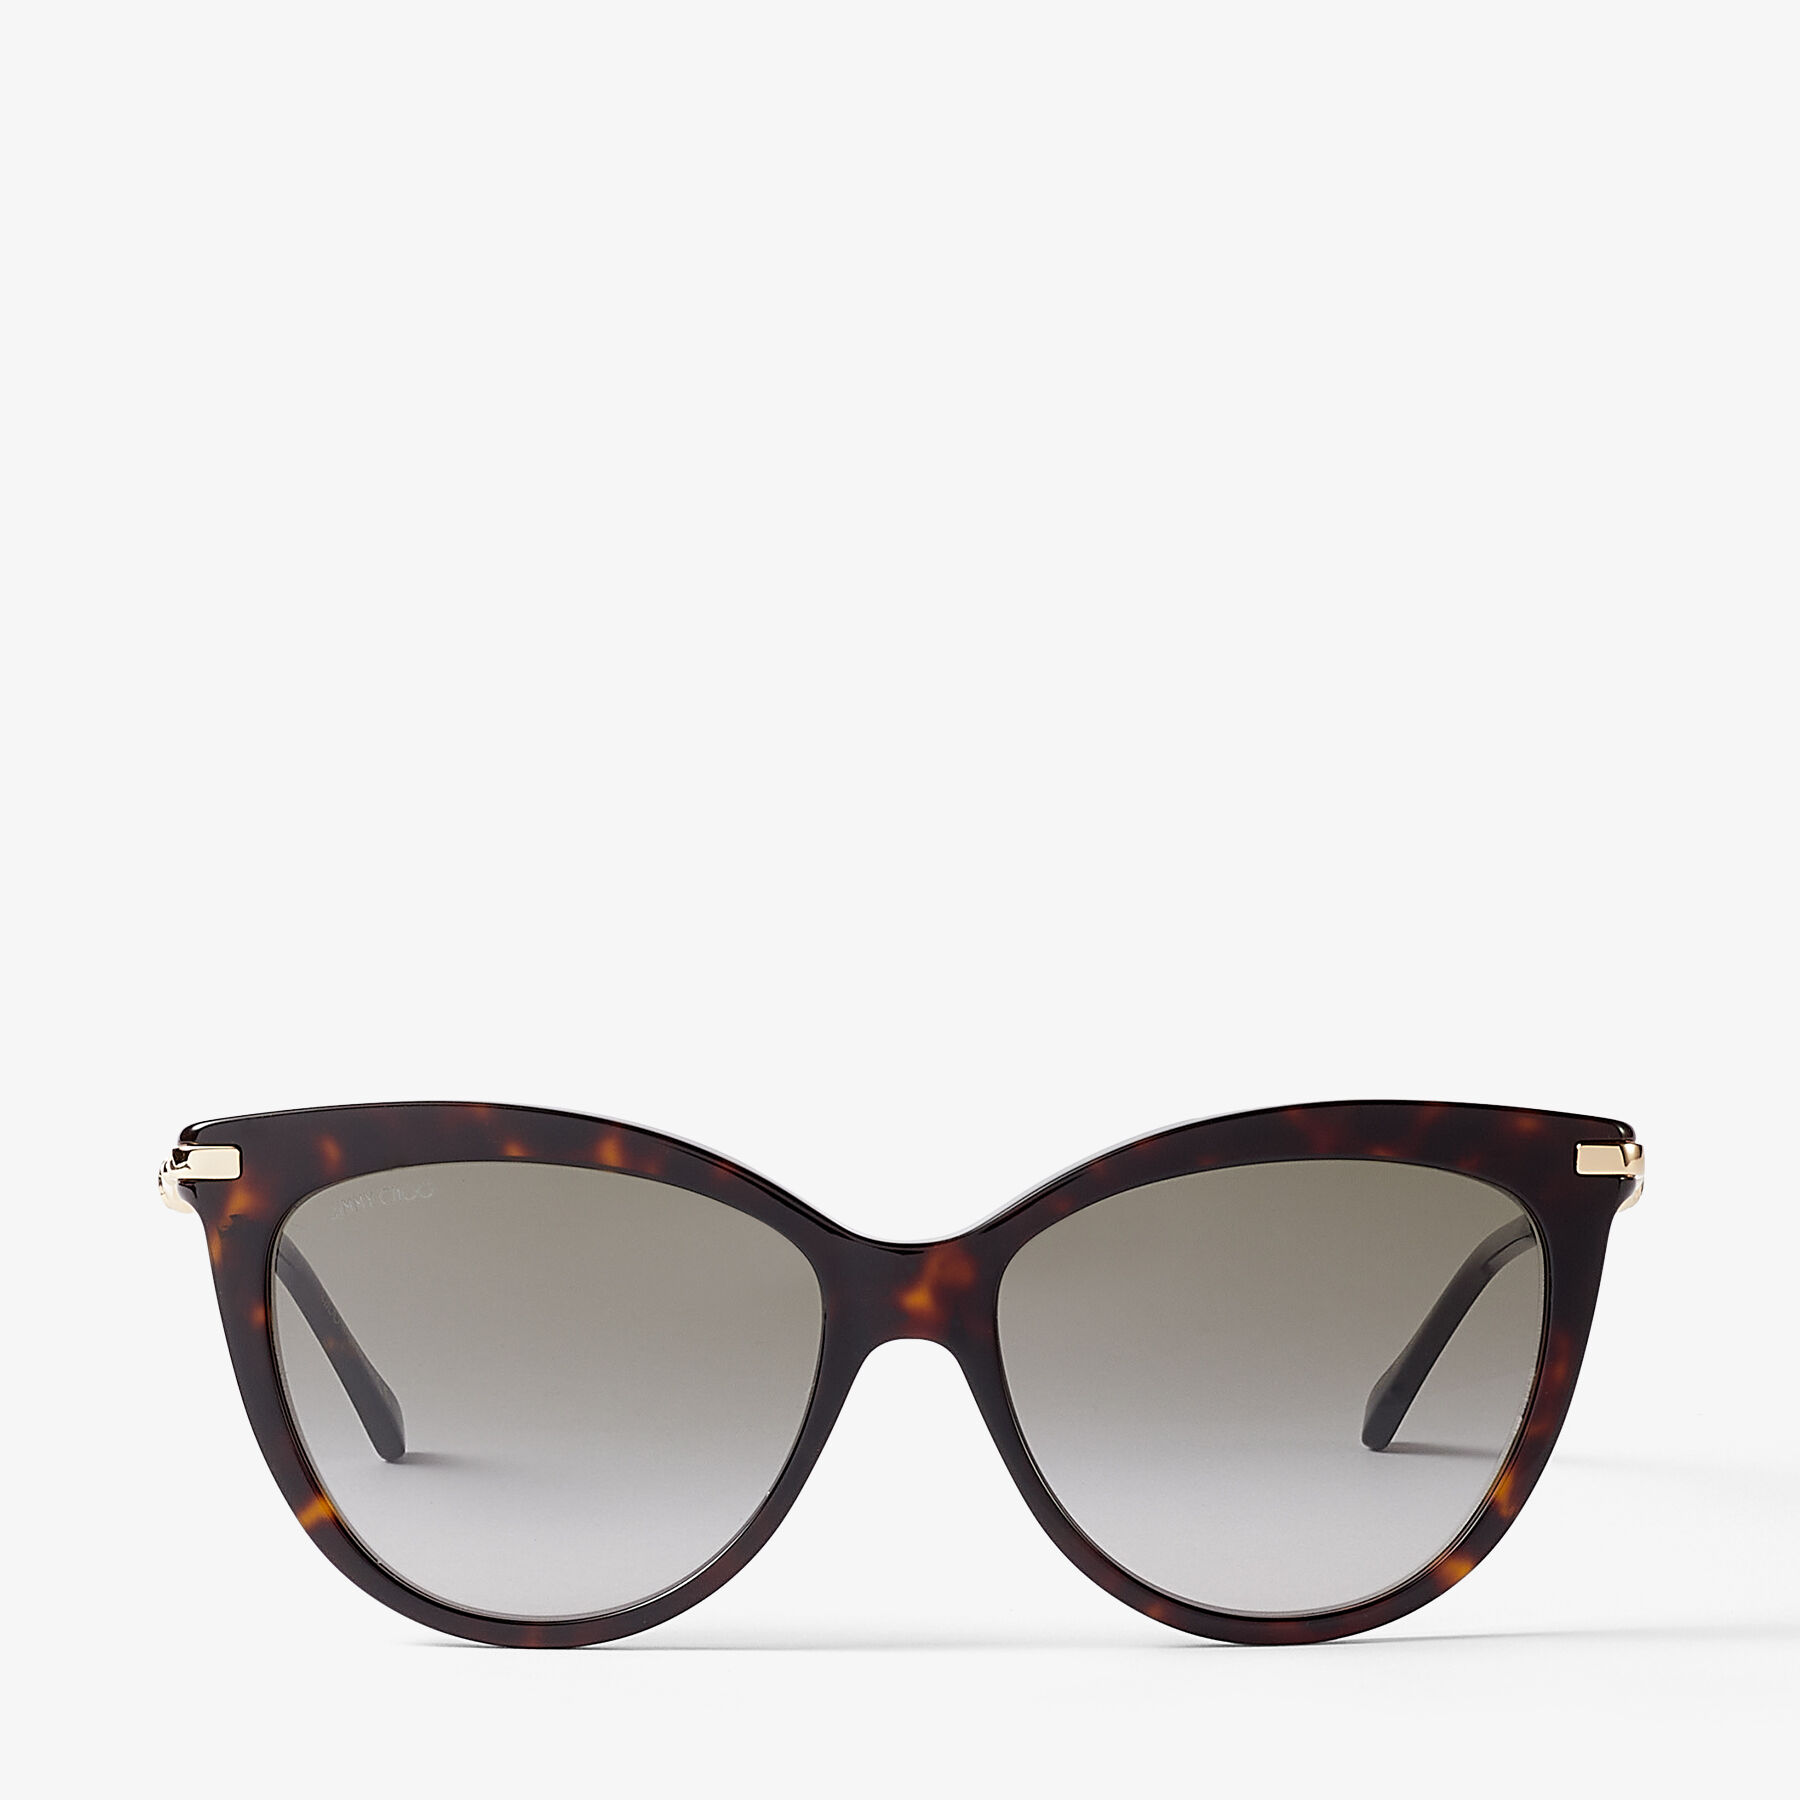 Cateye double frame sunglasses in acetate and metal Dark Havana - LOEWE